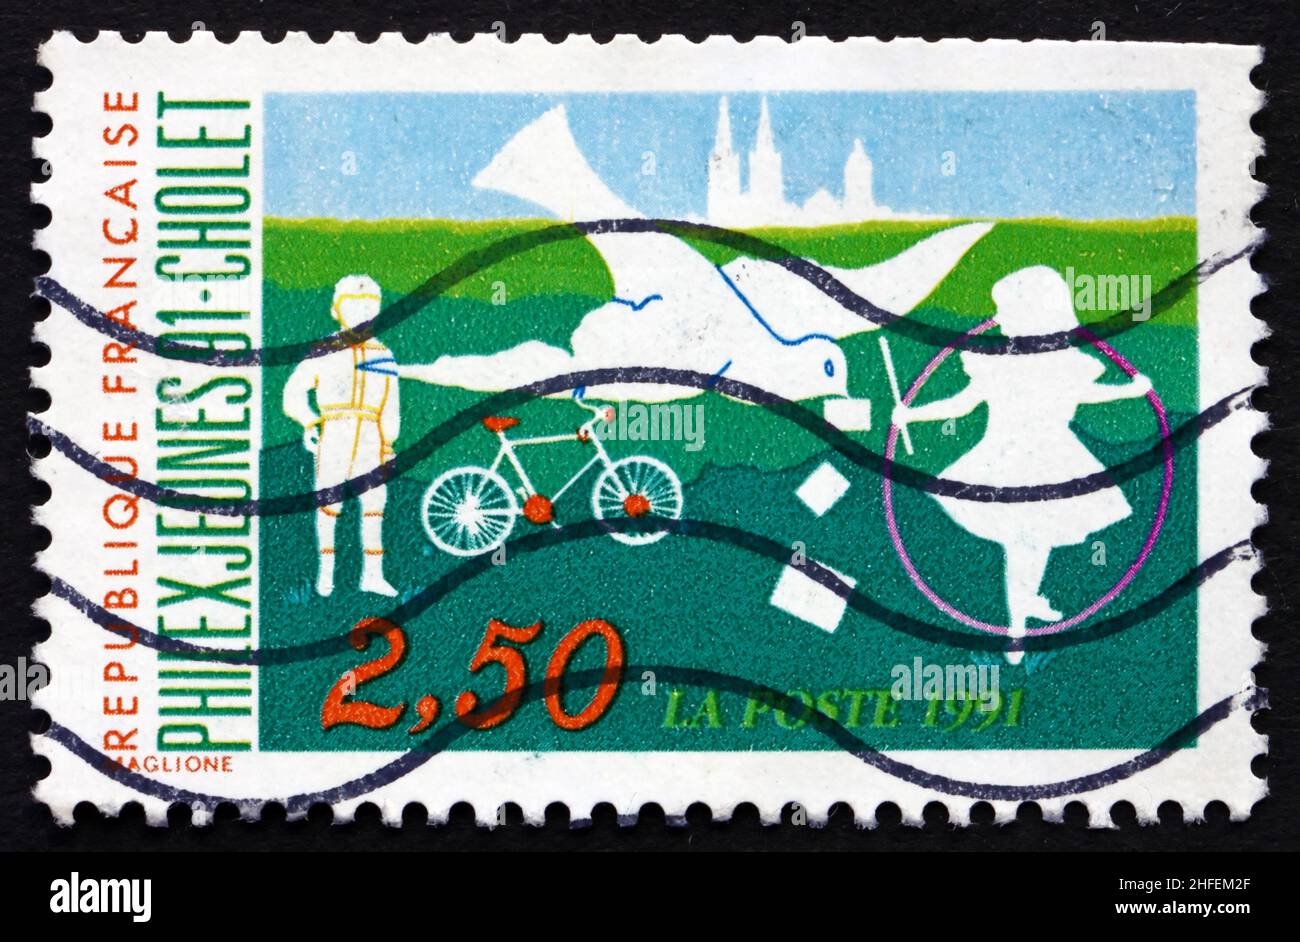 FRANCE - VERS 1991 : un timbre imprimé en France montre Children Playing, exposition philatélique de la jeunesse, Cholet, vers 1991 Banque D'Images